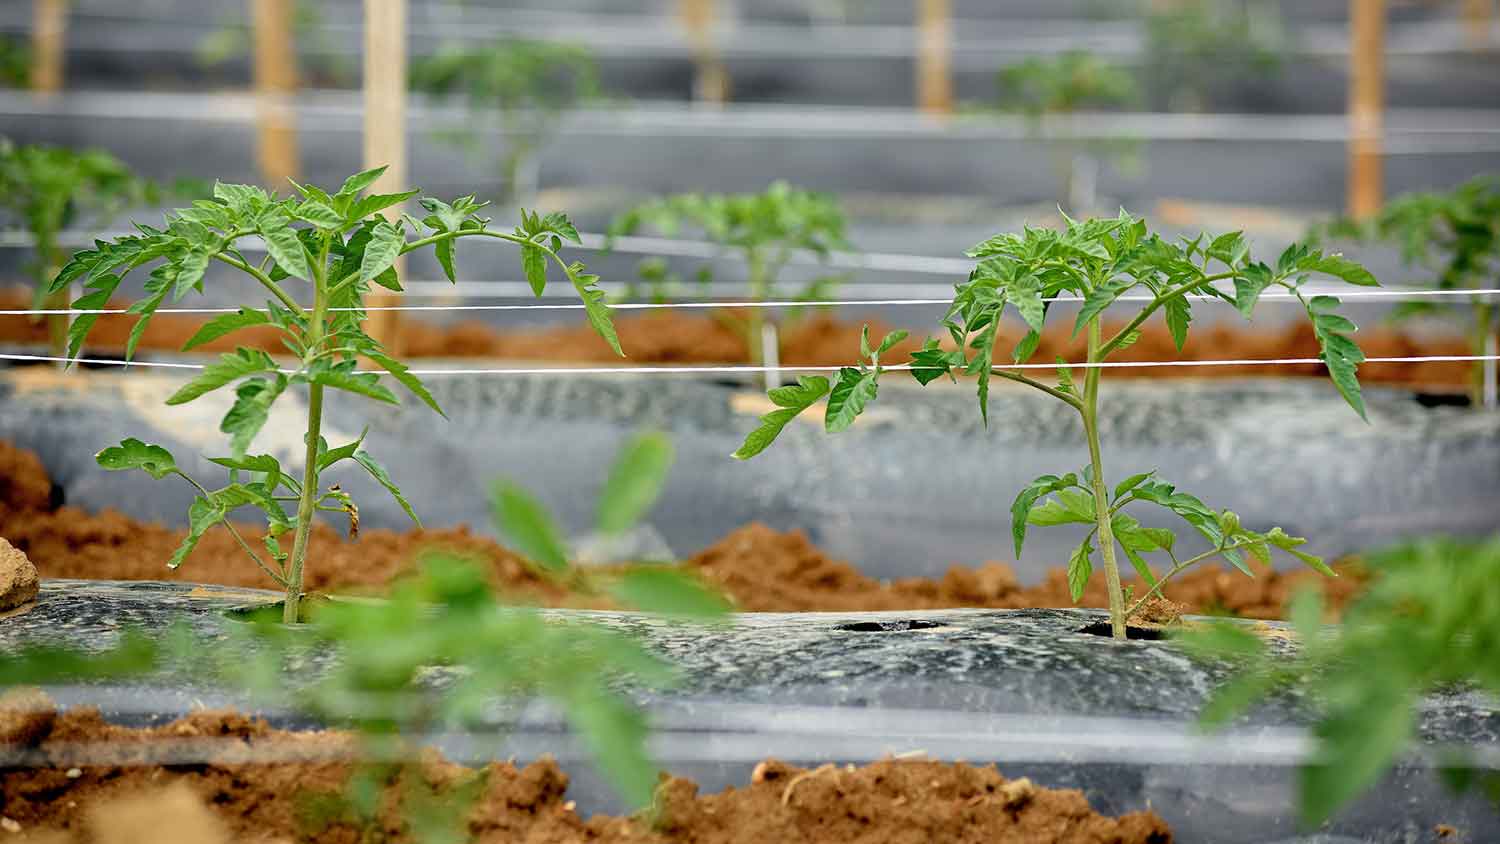 Tomato plants in field